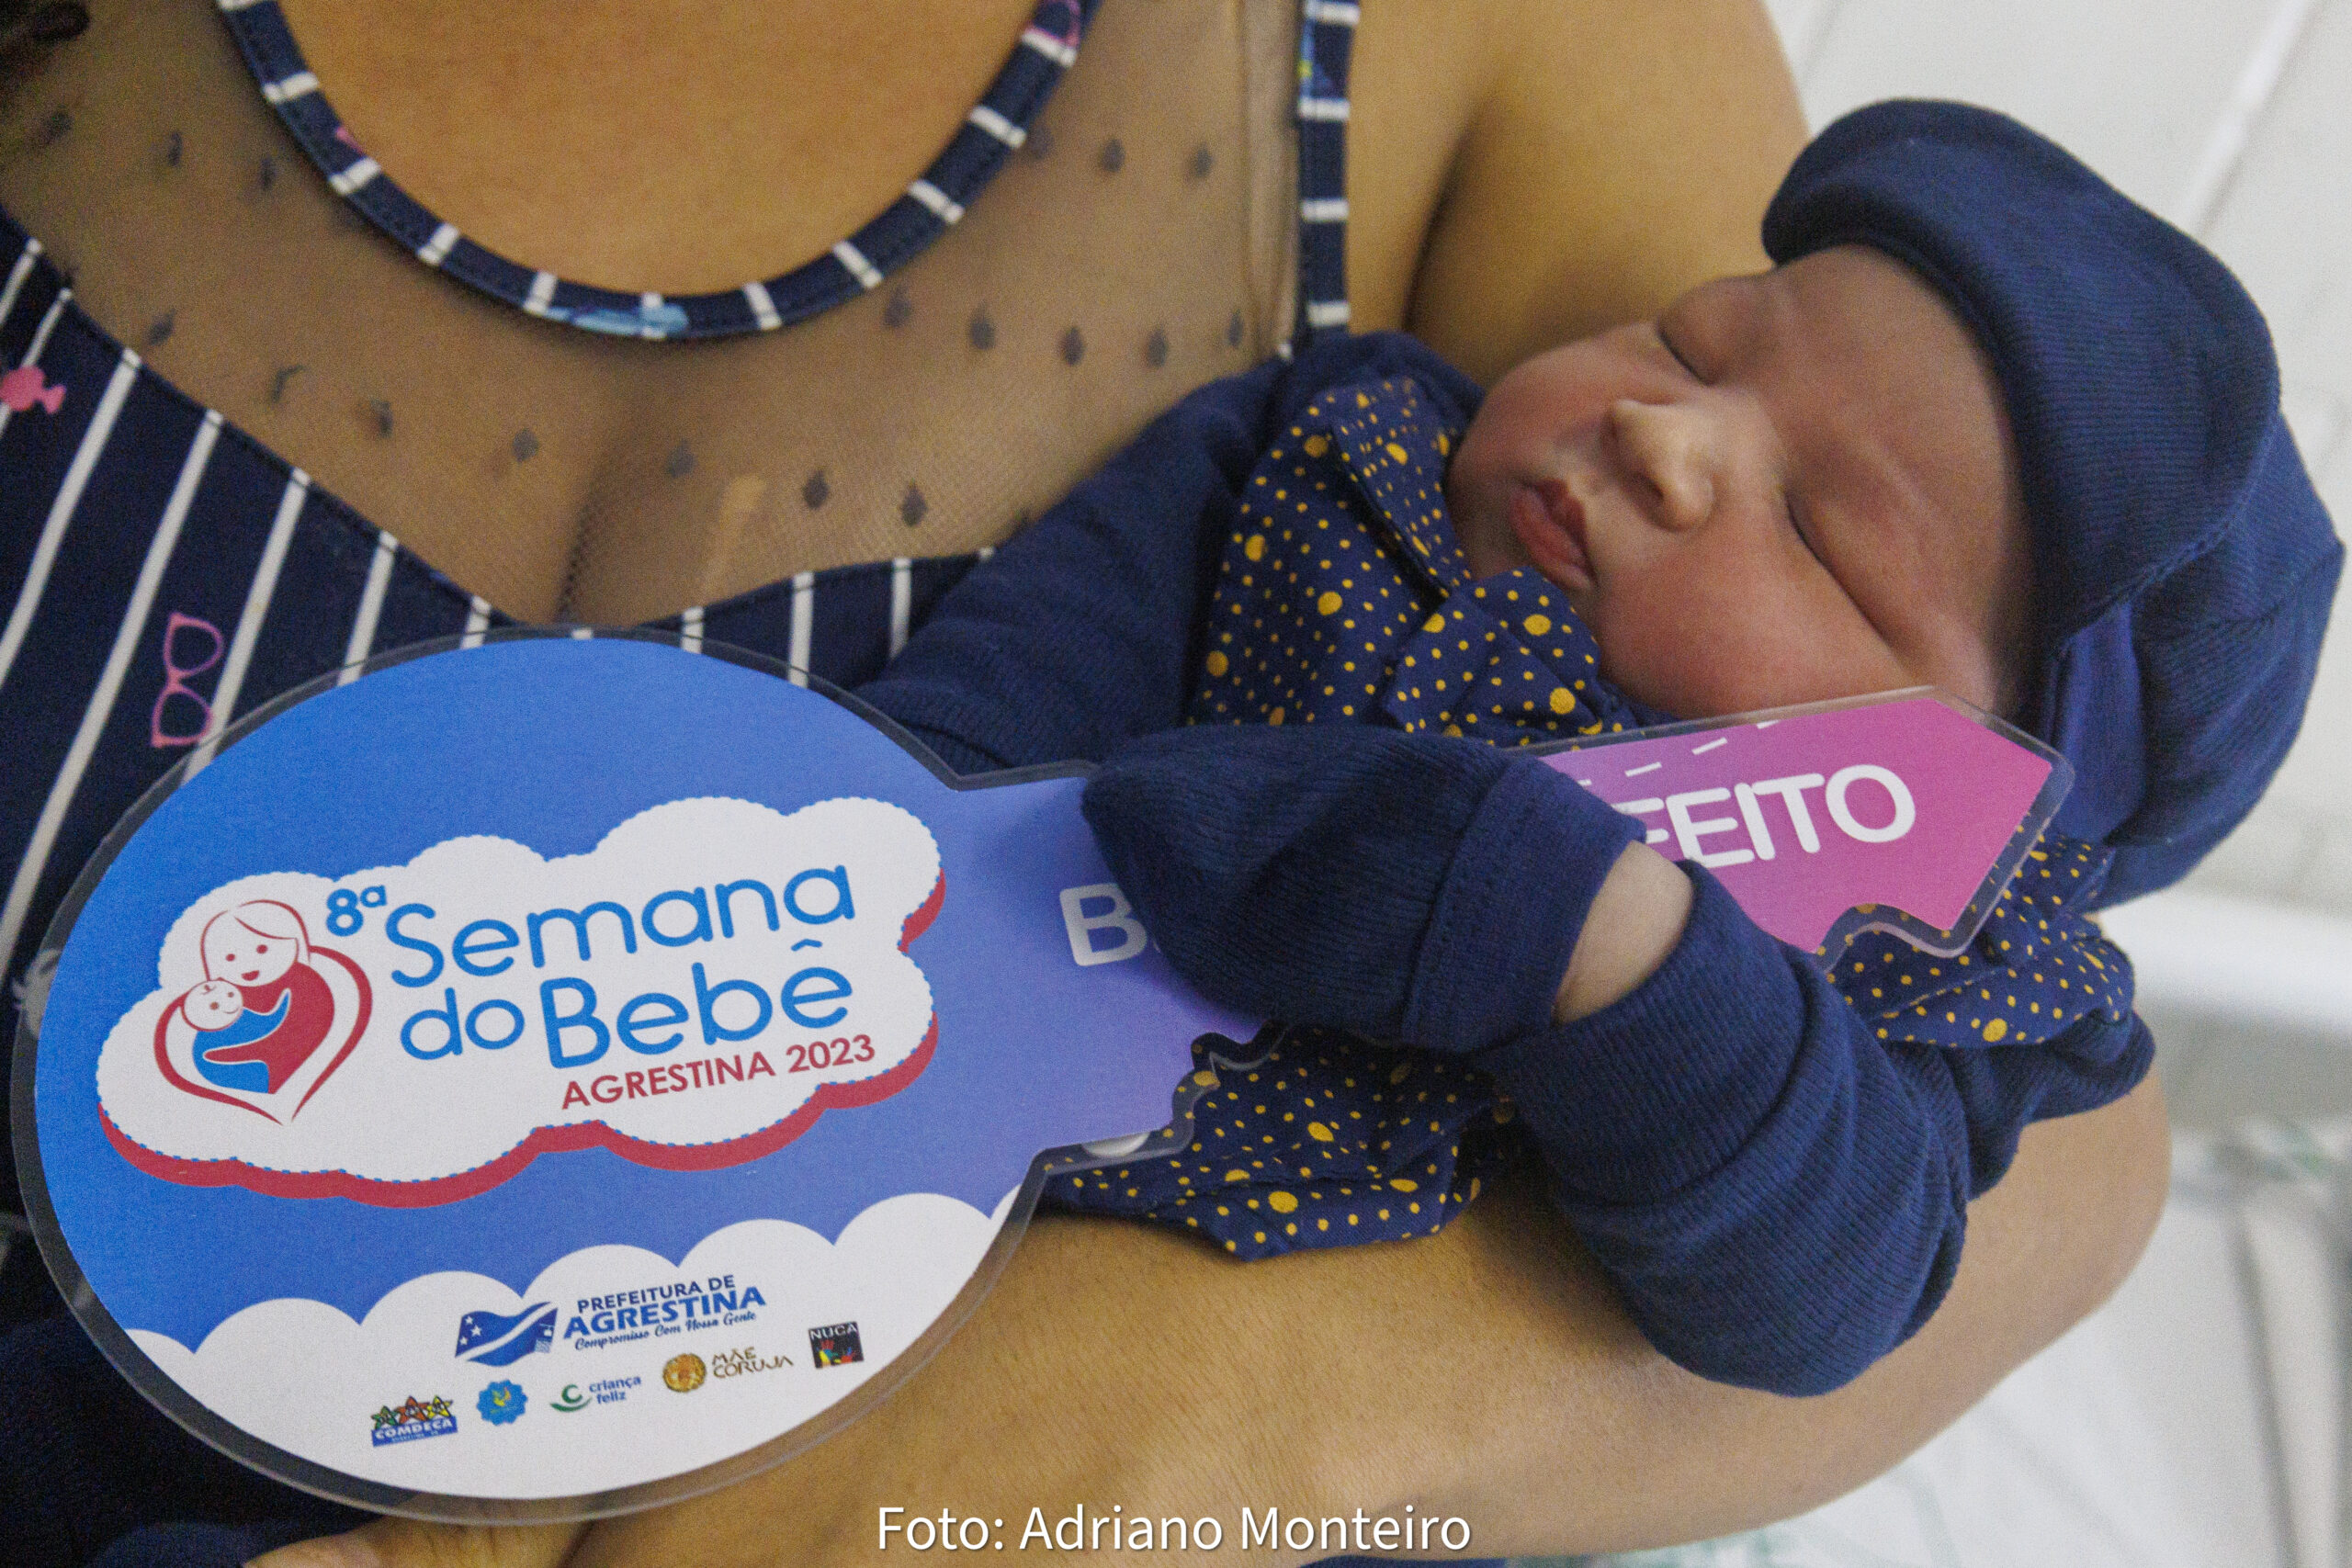  8ª Semana do Bebê de Agrestina é concluída com nascimento do bebê prefeito